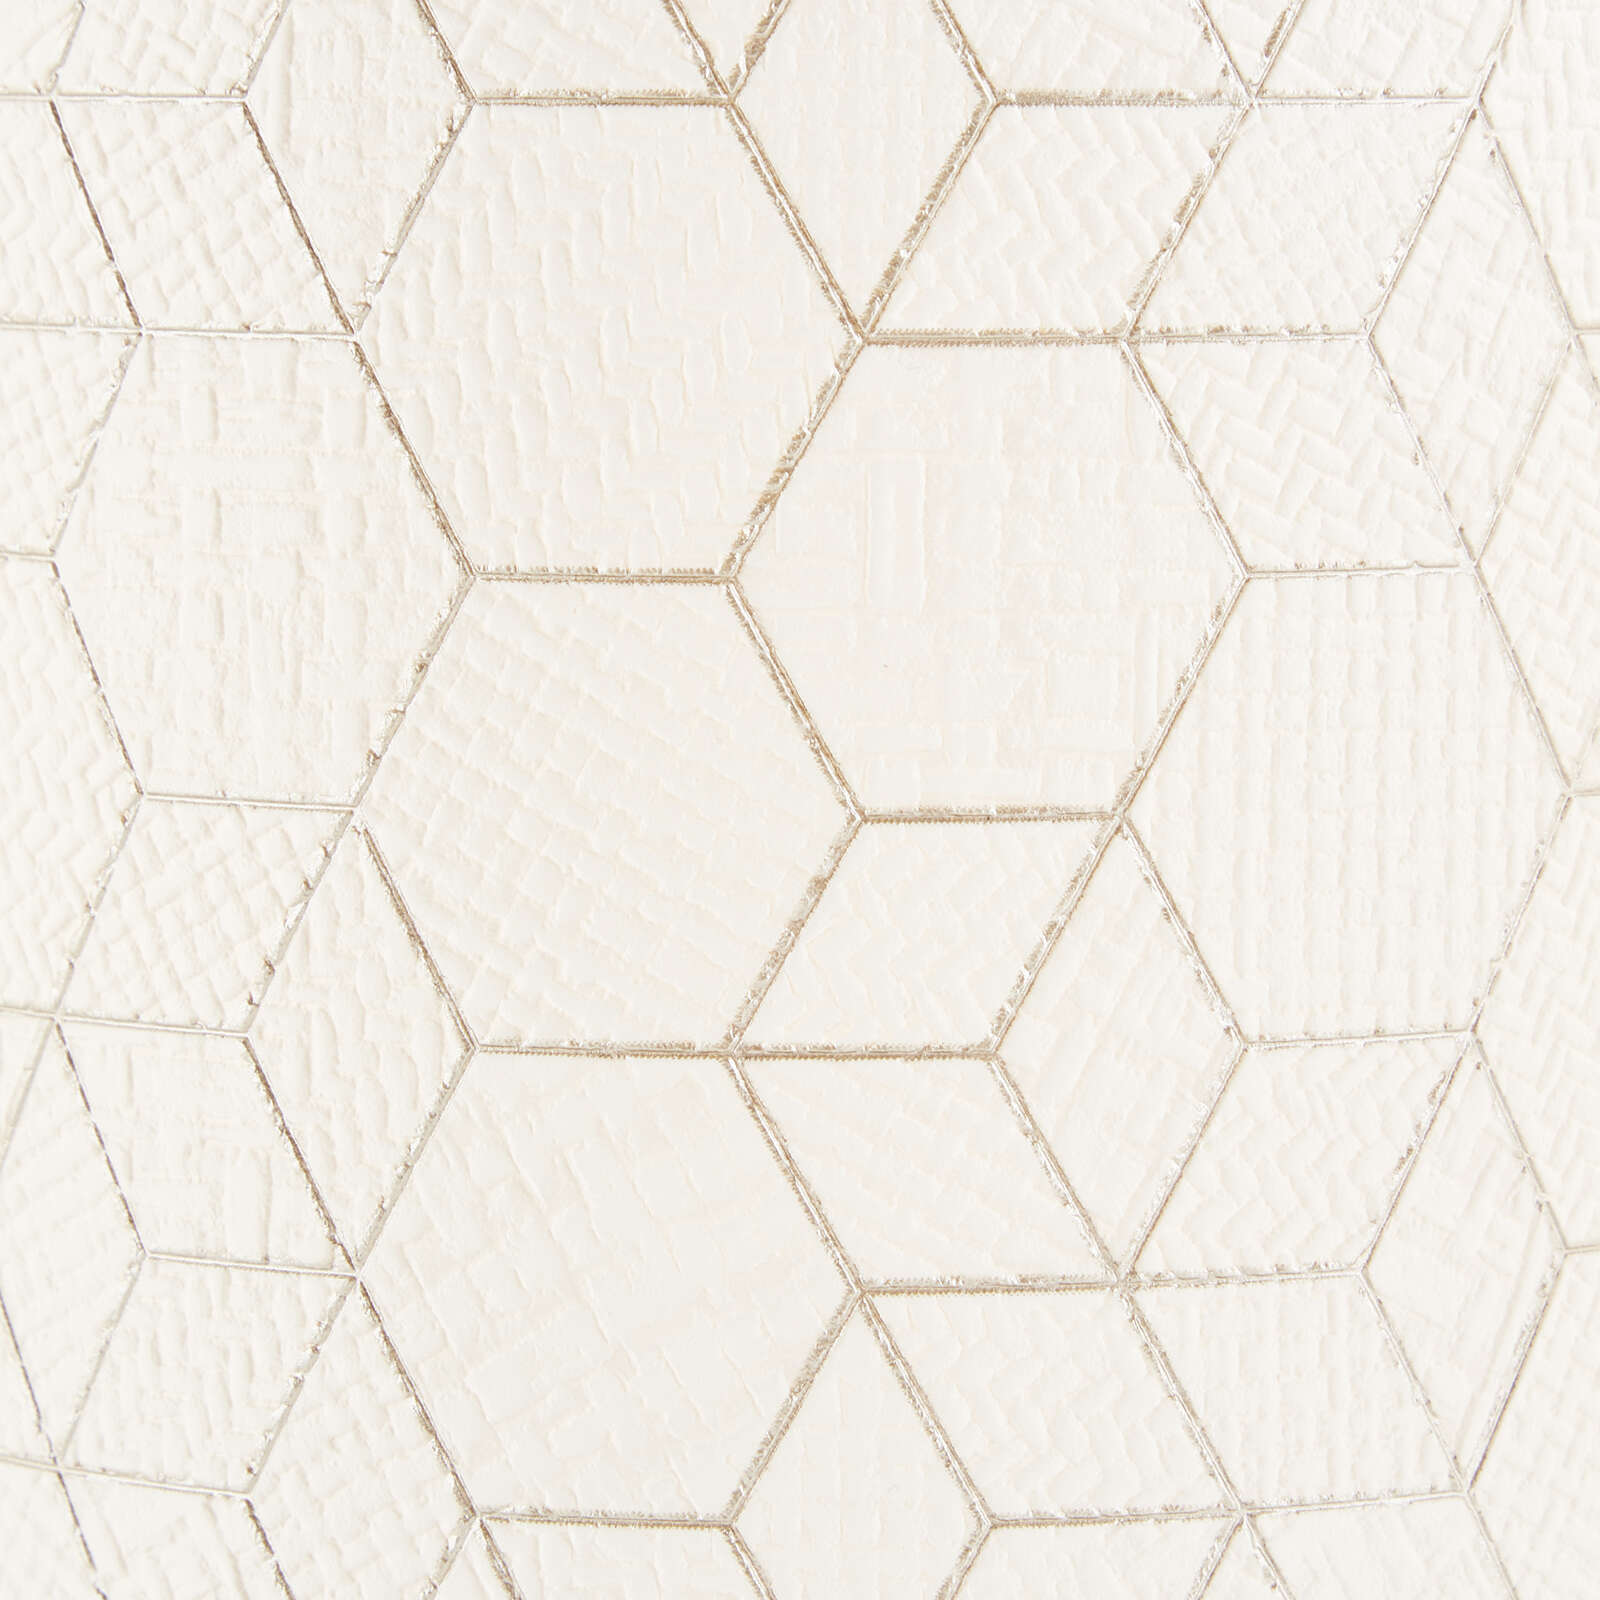             Spotbalken aus Textil - Hannes 9 – Braun
        